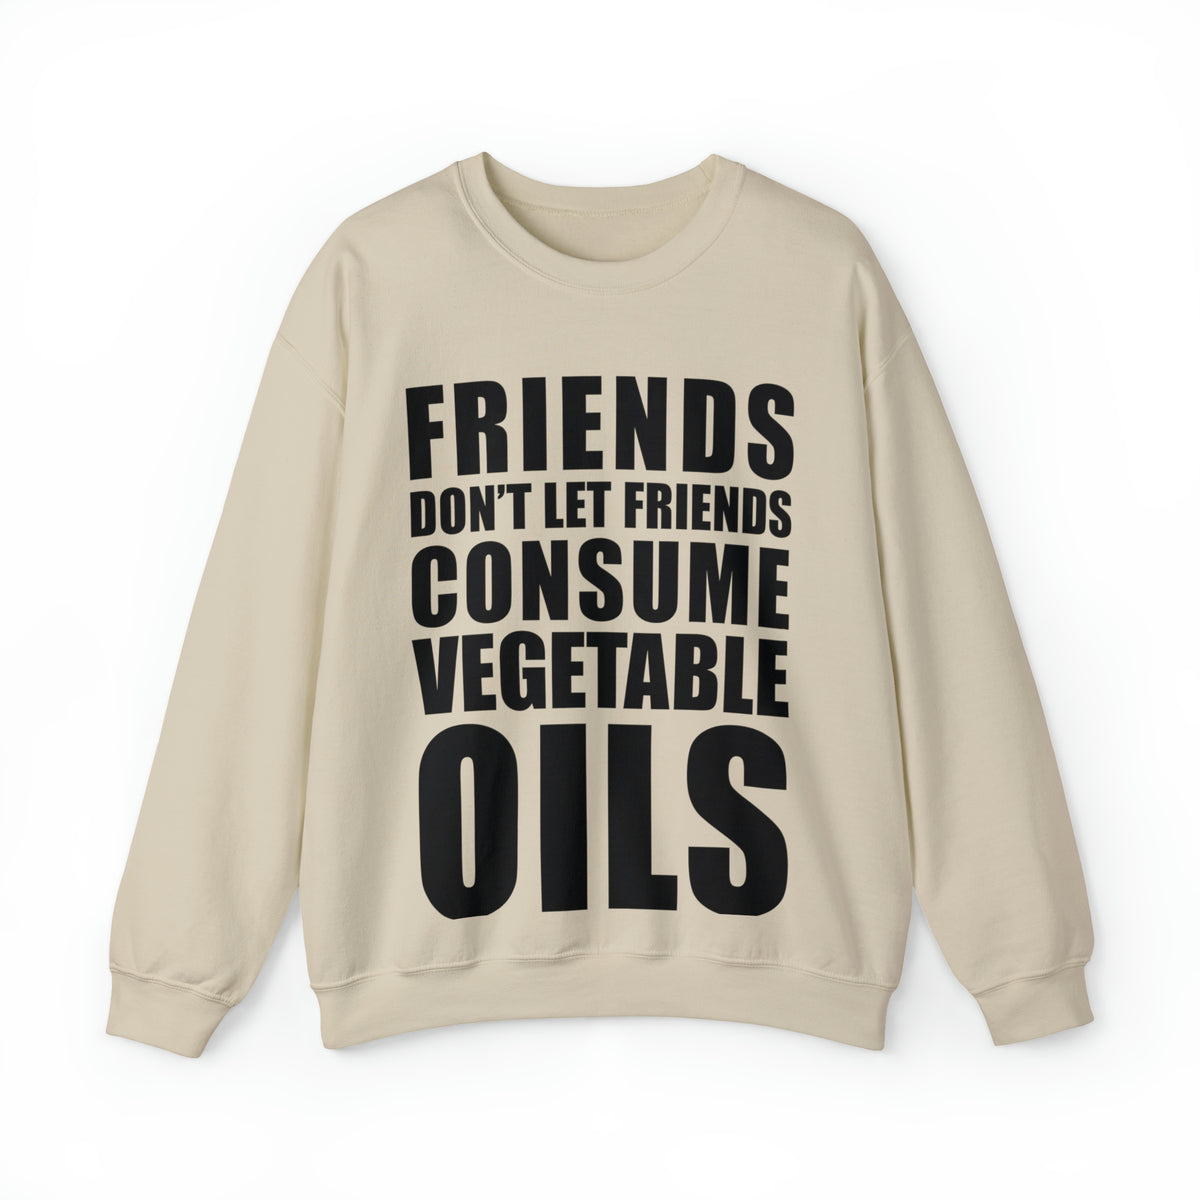 Friends don't let friends consume vegetable oils